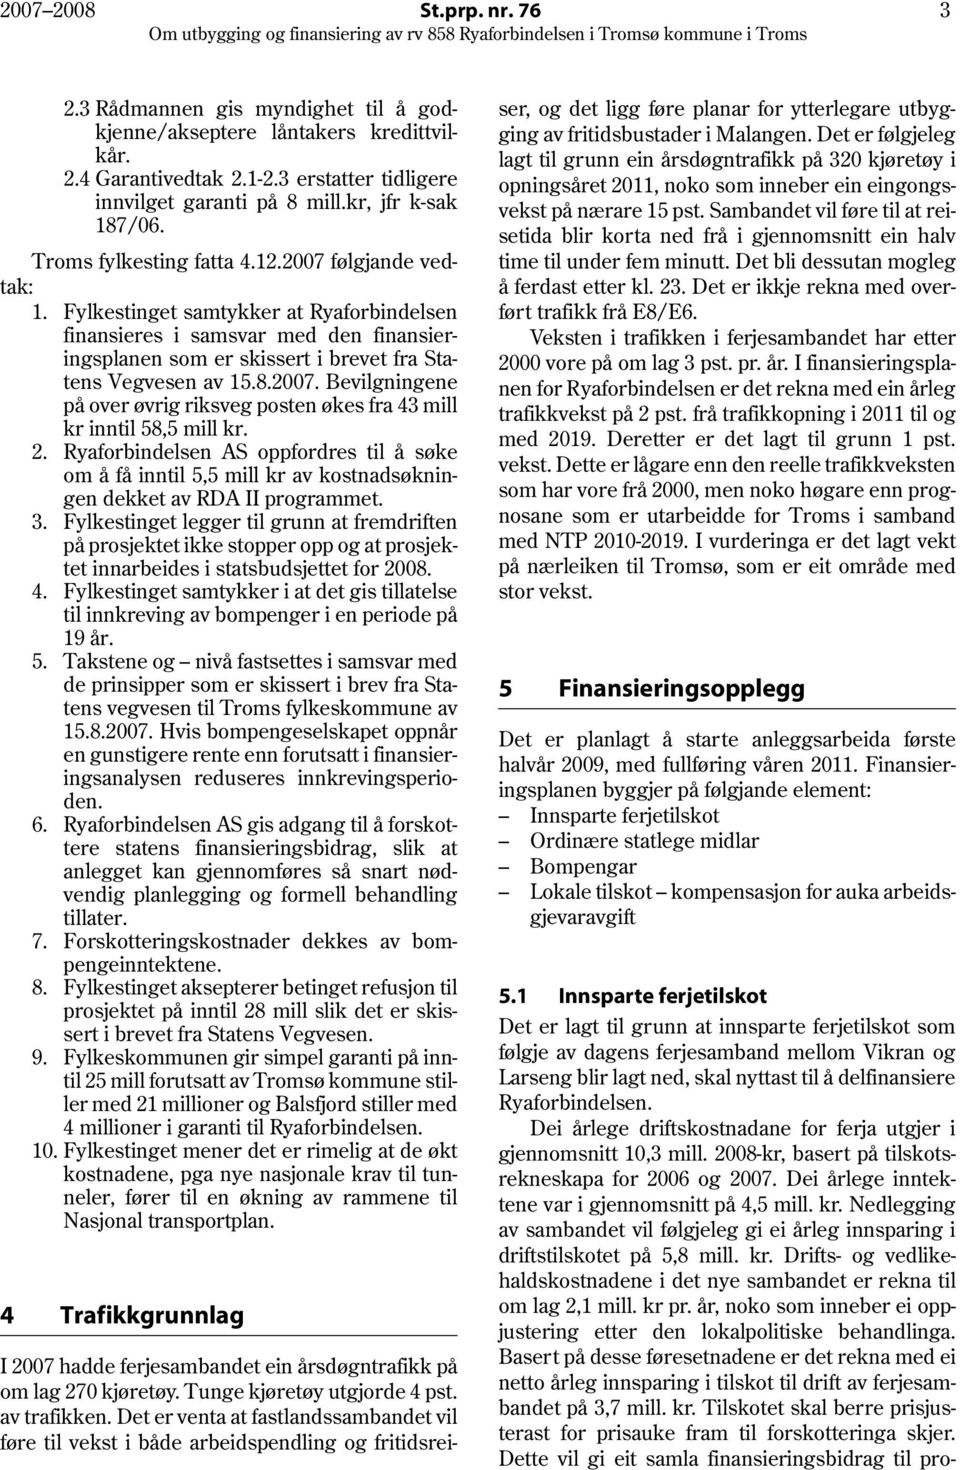 Fylkestinget samtykker at Ryaforbindelsen finansieres i samsvar med den finansieringsplanen som er skissert i brevet fra Statens Vegvesen av 15.8.2007.